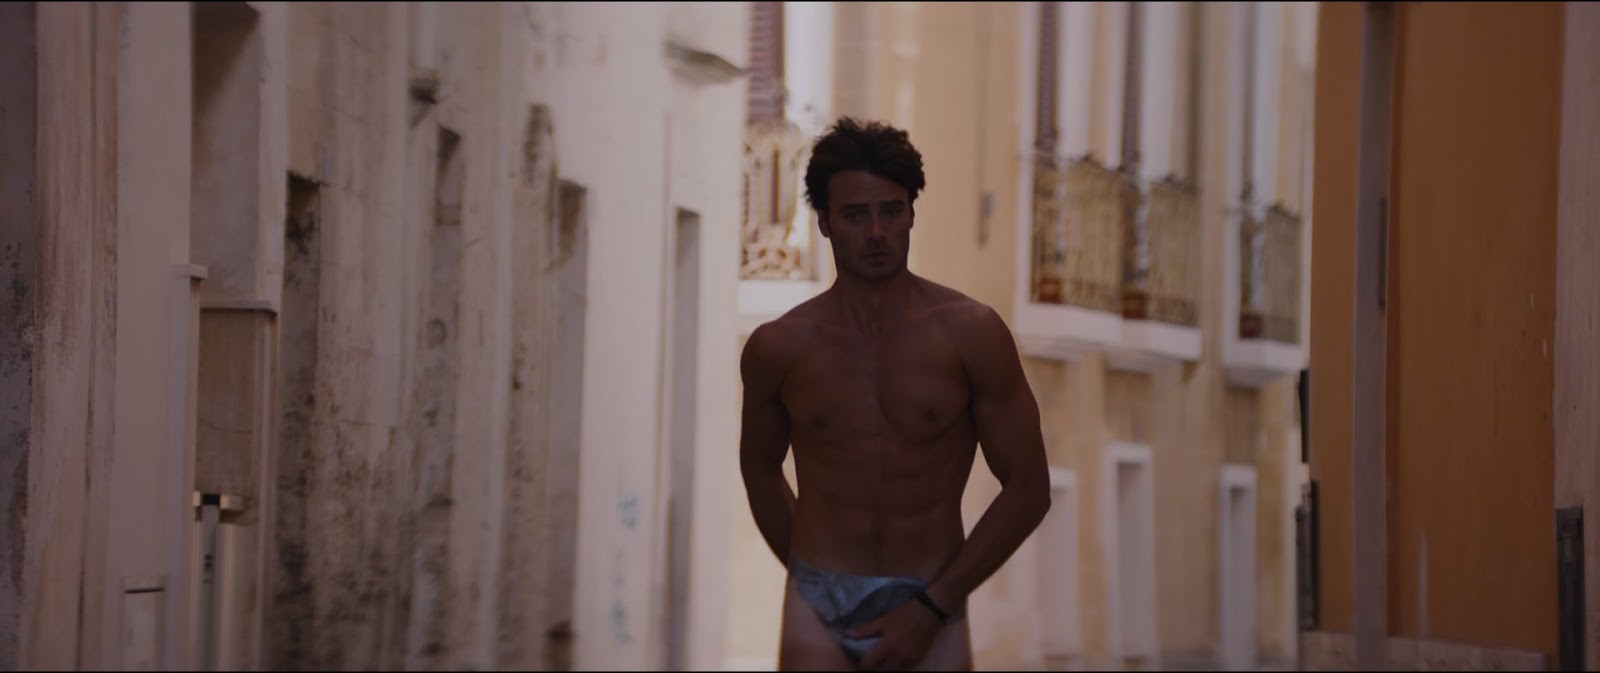 Giulio Berruti in "Walking on Sunshine" (2014) .